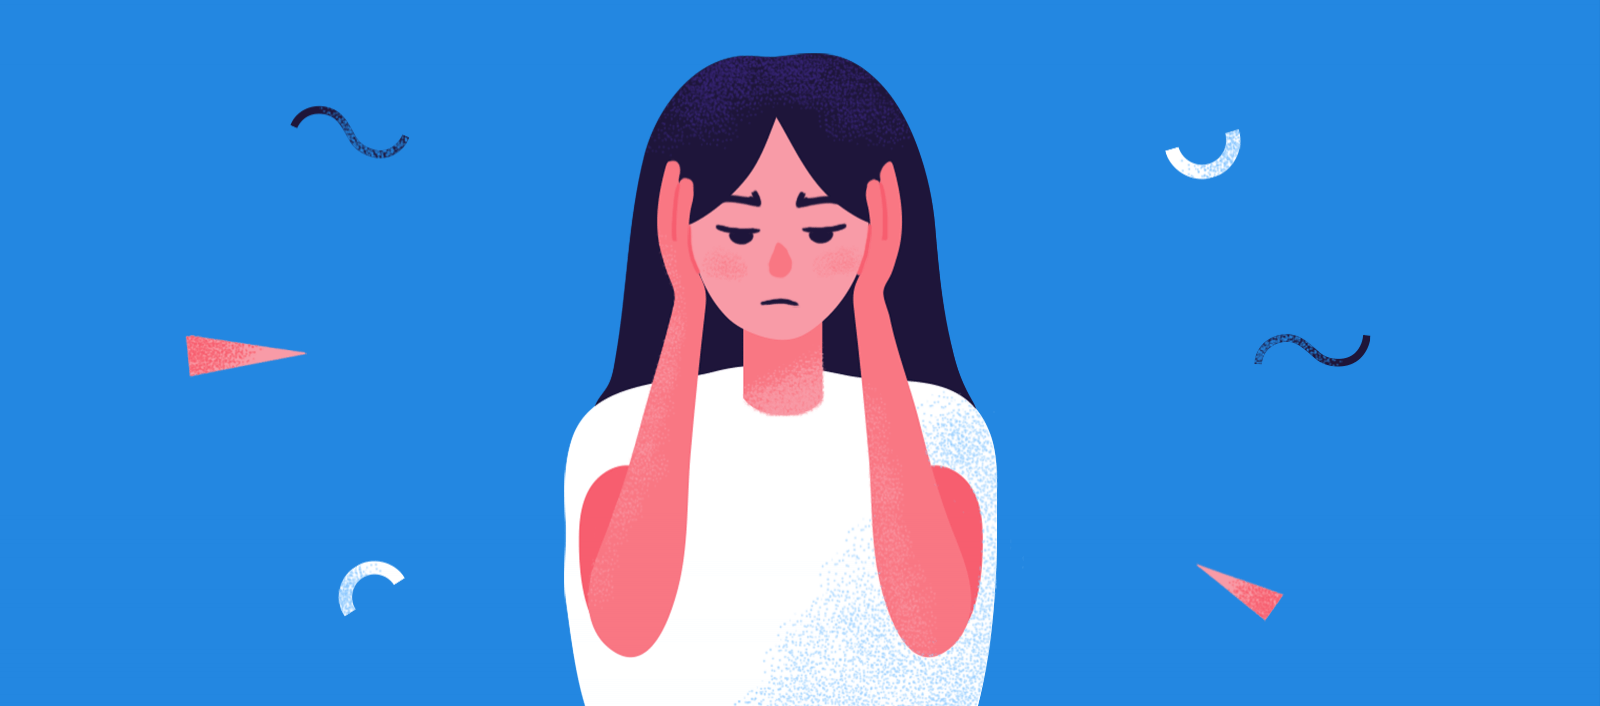 焦虑的嗡嗡感:症状、原因和有效的解决方案